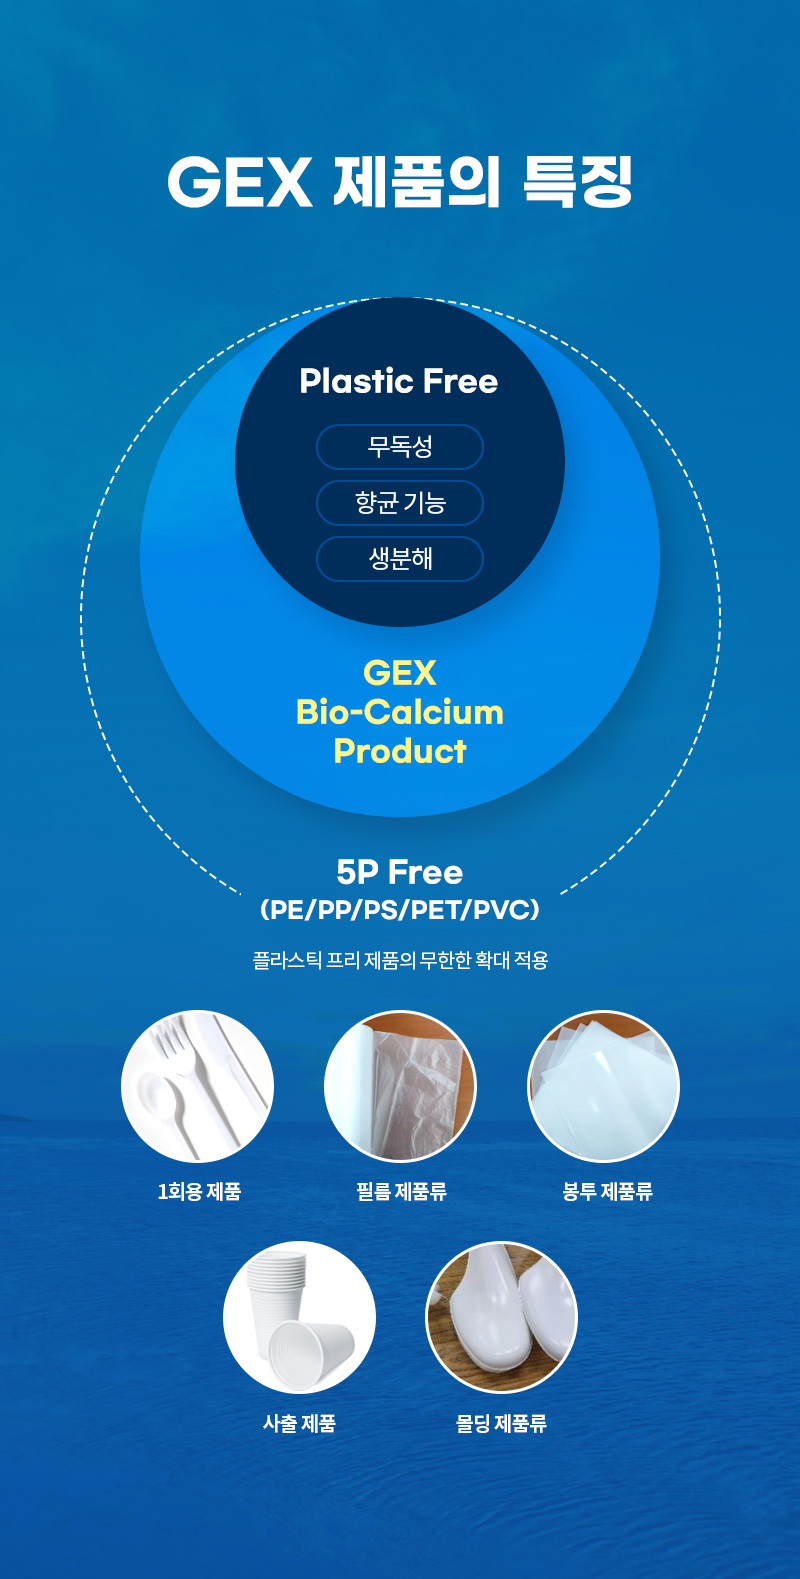 GEX 제품의 특징